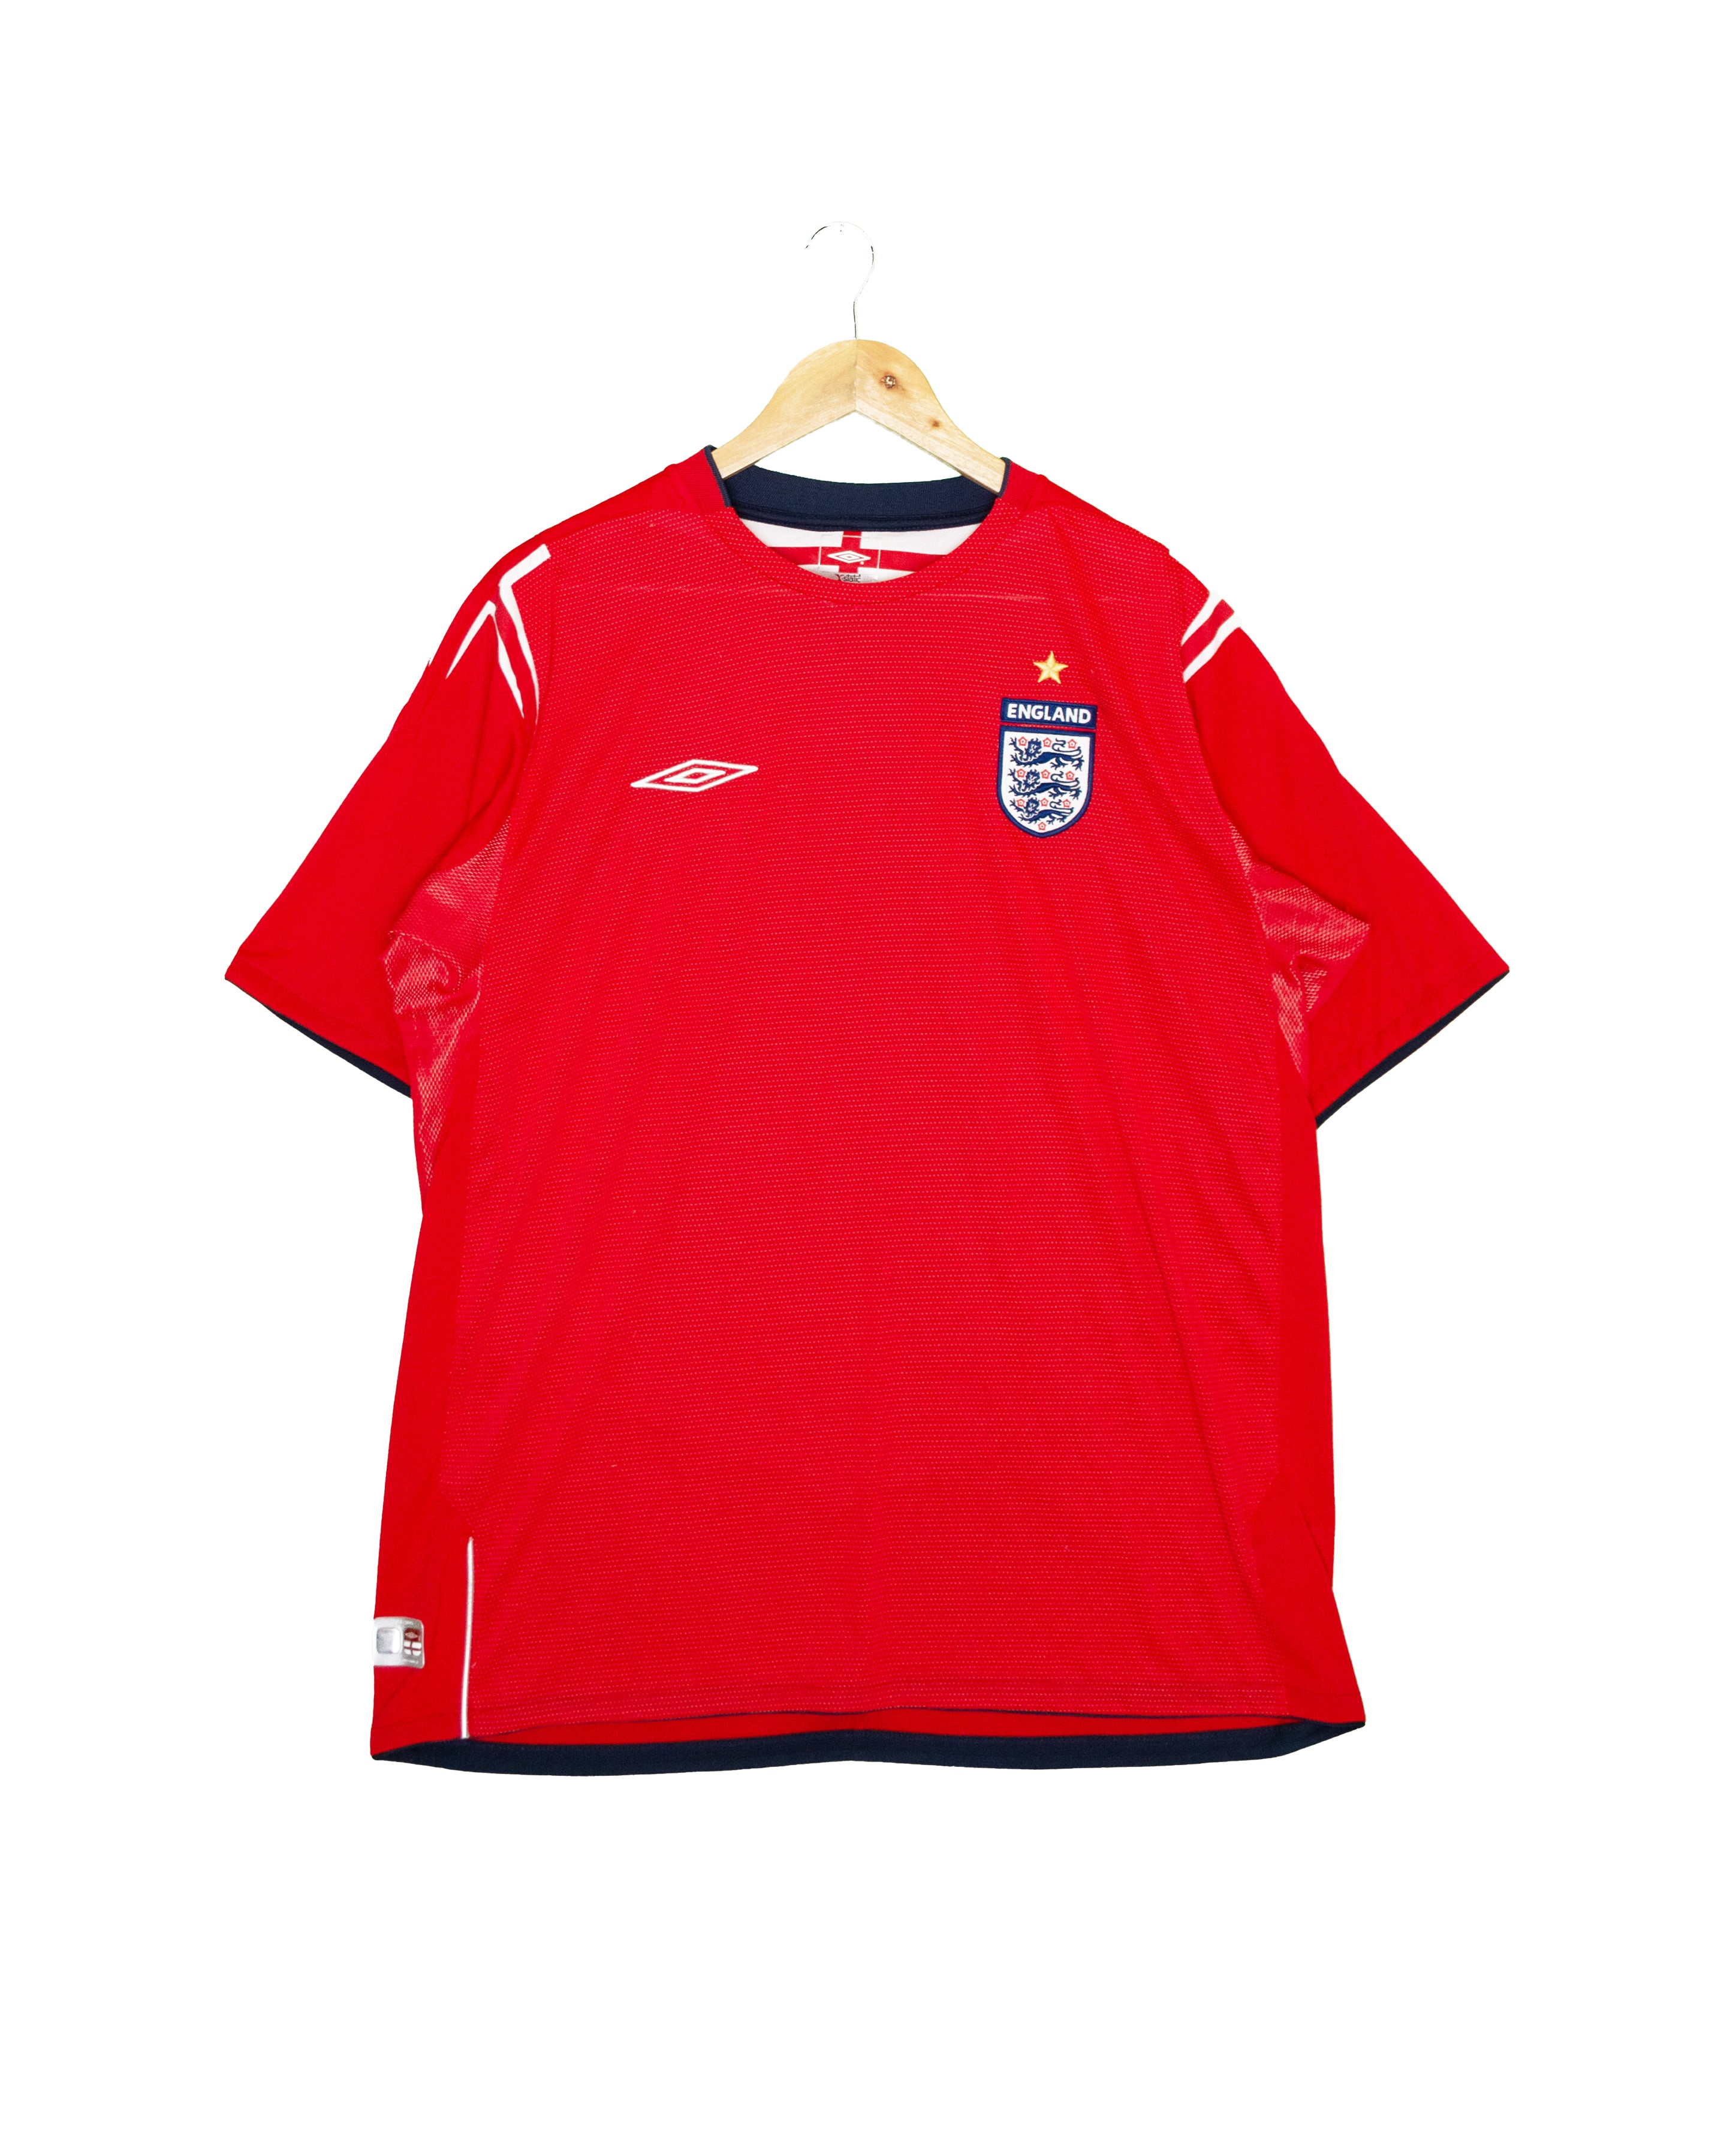 England 2004 Away Shirt - XL - #1882